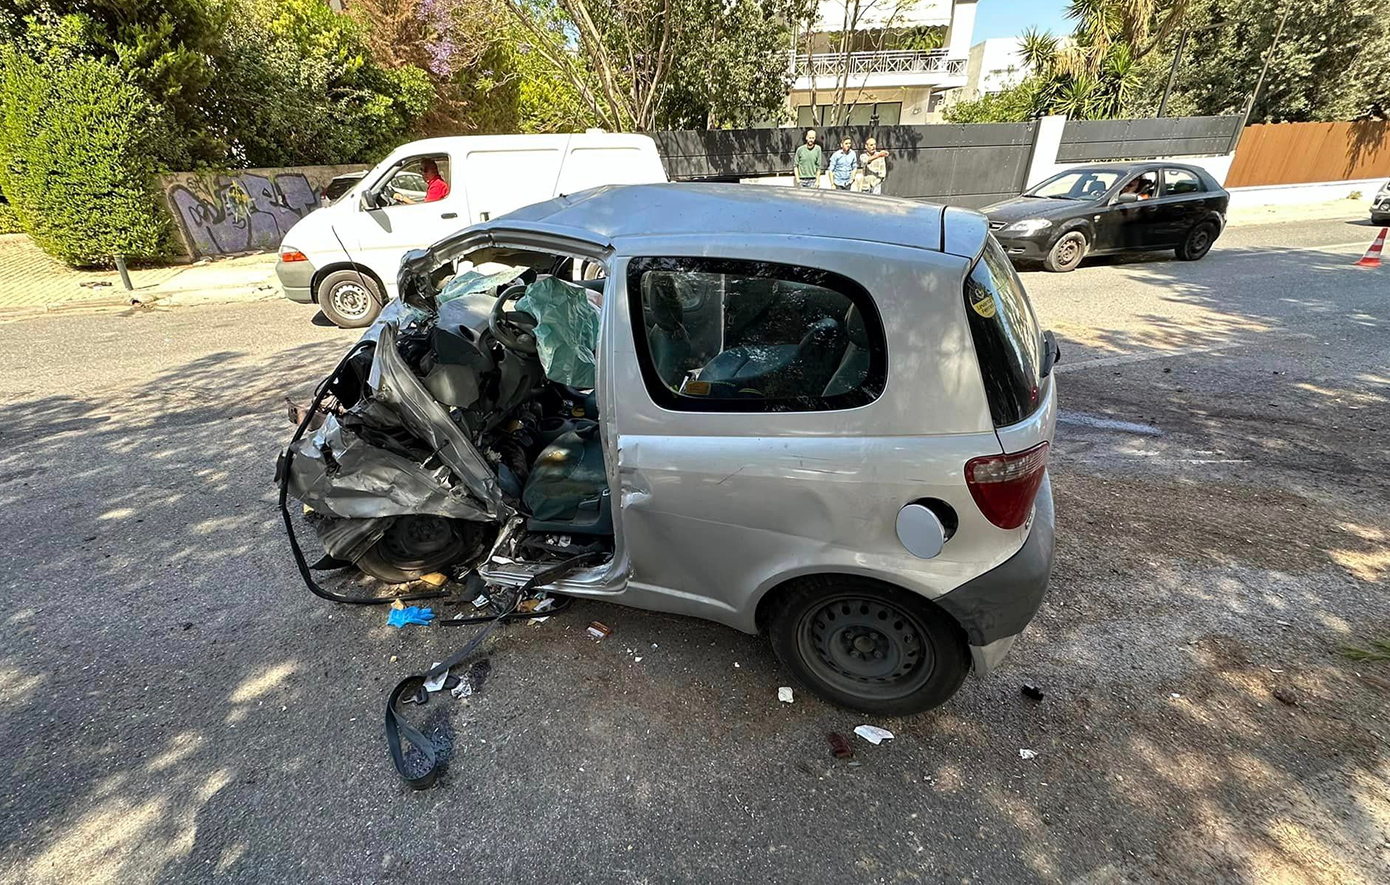 Τροχαίο δυστύχημα στο Καβούρι: Νεκρός 37χρονος οδηγός αυτοκινήτου που ανατράπηκε &#8211; Σοκάρουν οι εικόνες